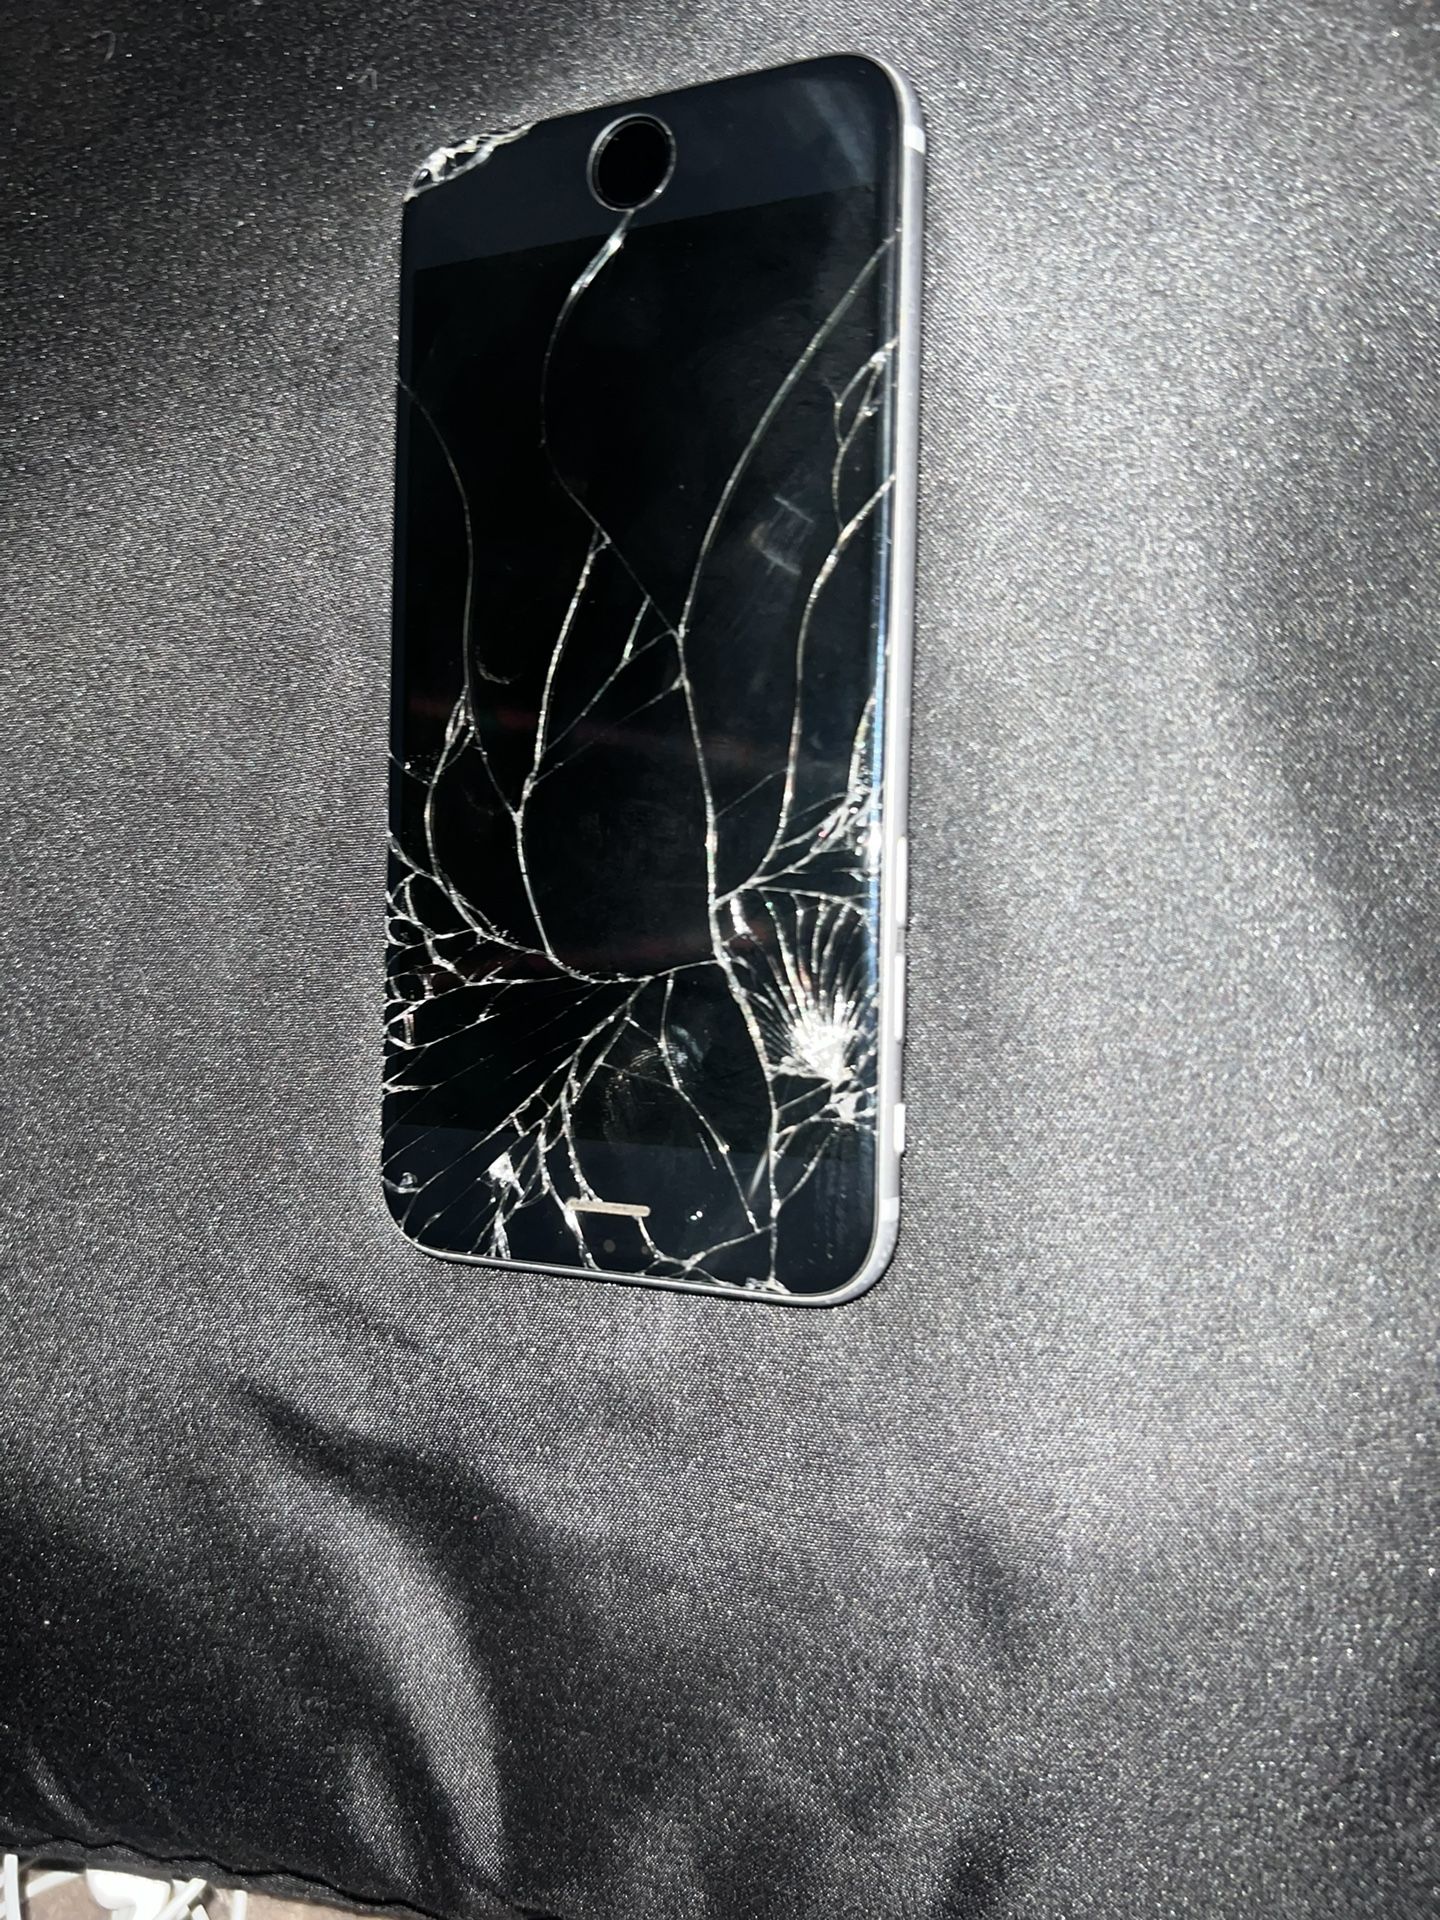 Cracked iPhone 6 